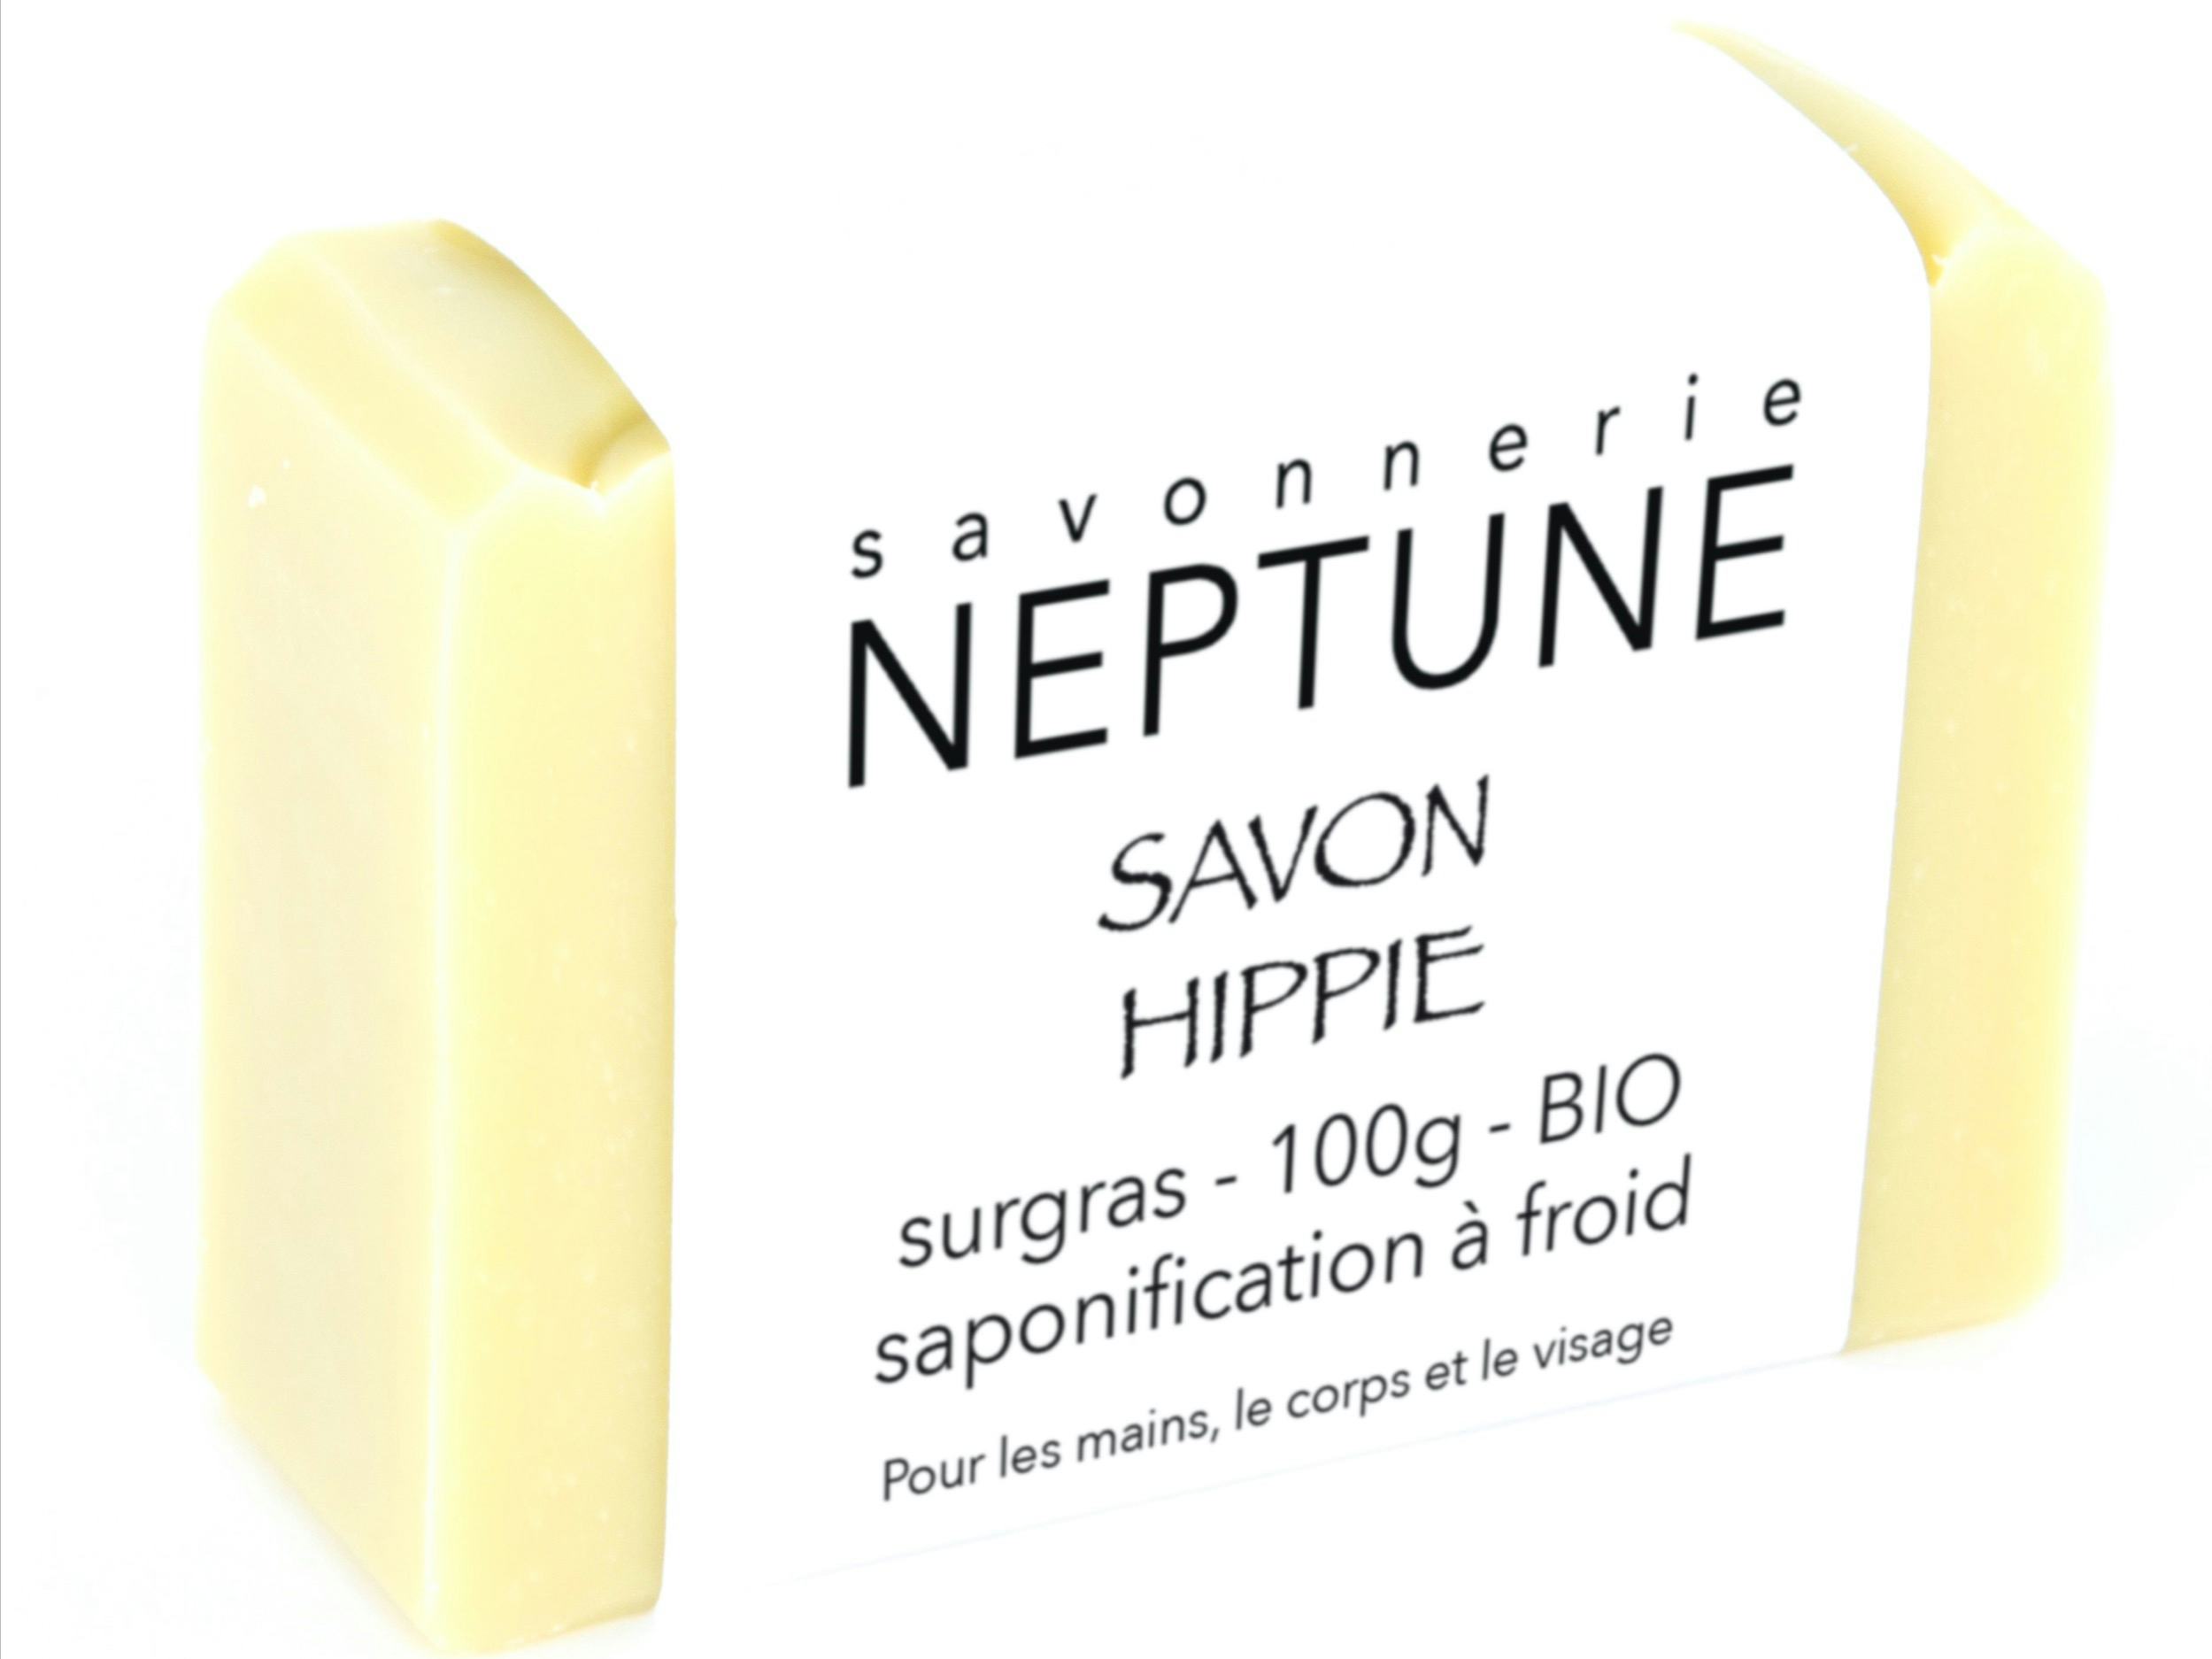 Hippie soap - organic, Savonnerie NEPTUNE, Crésuz, image 1 | Mimelis